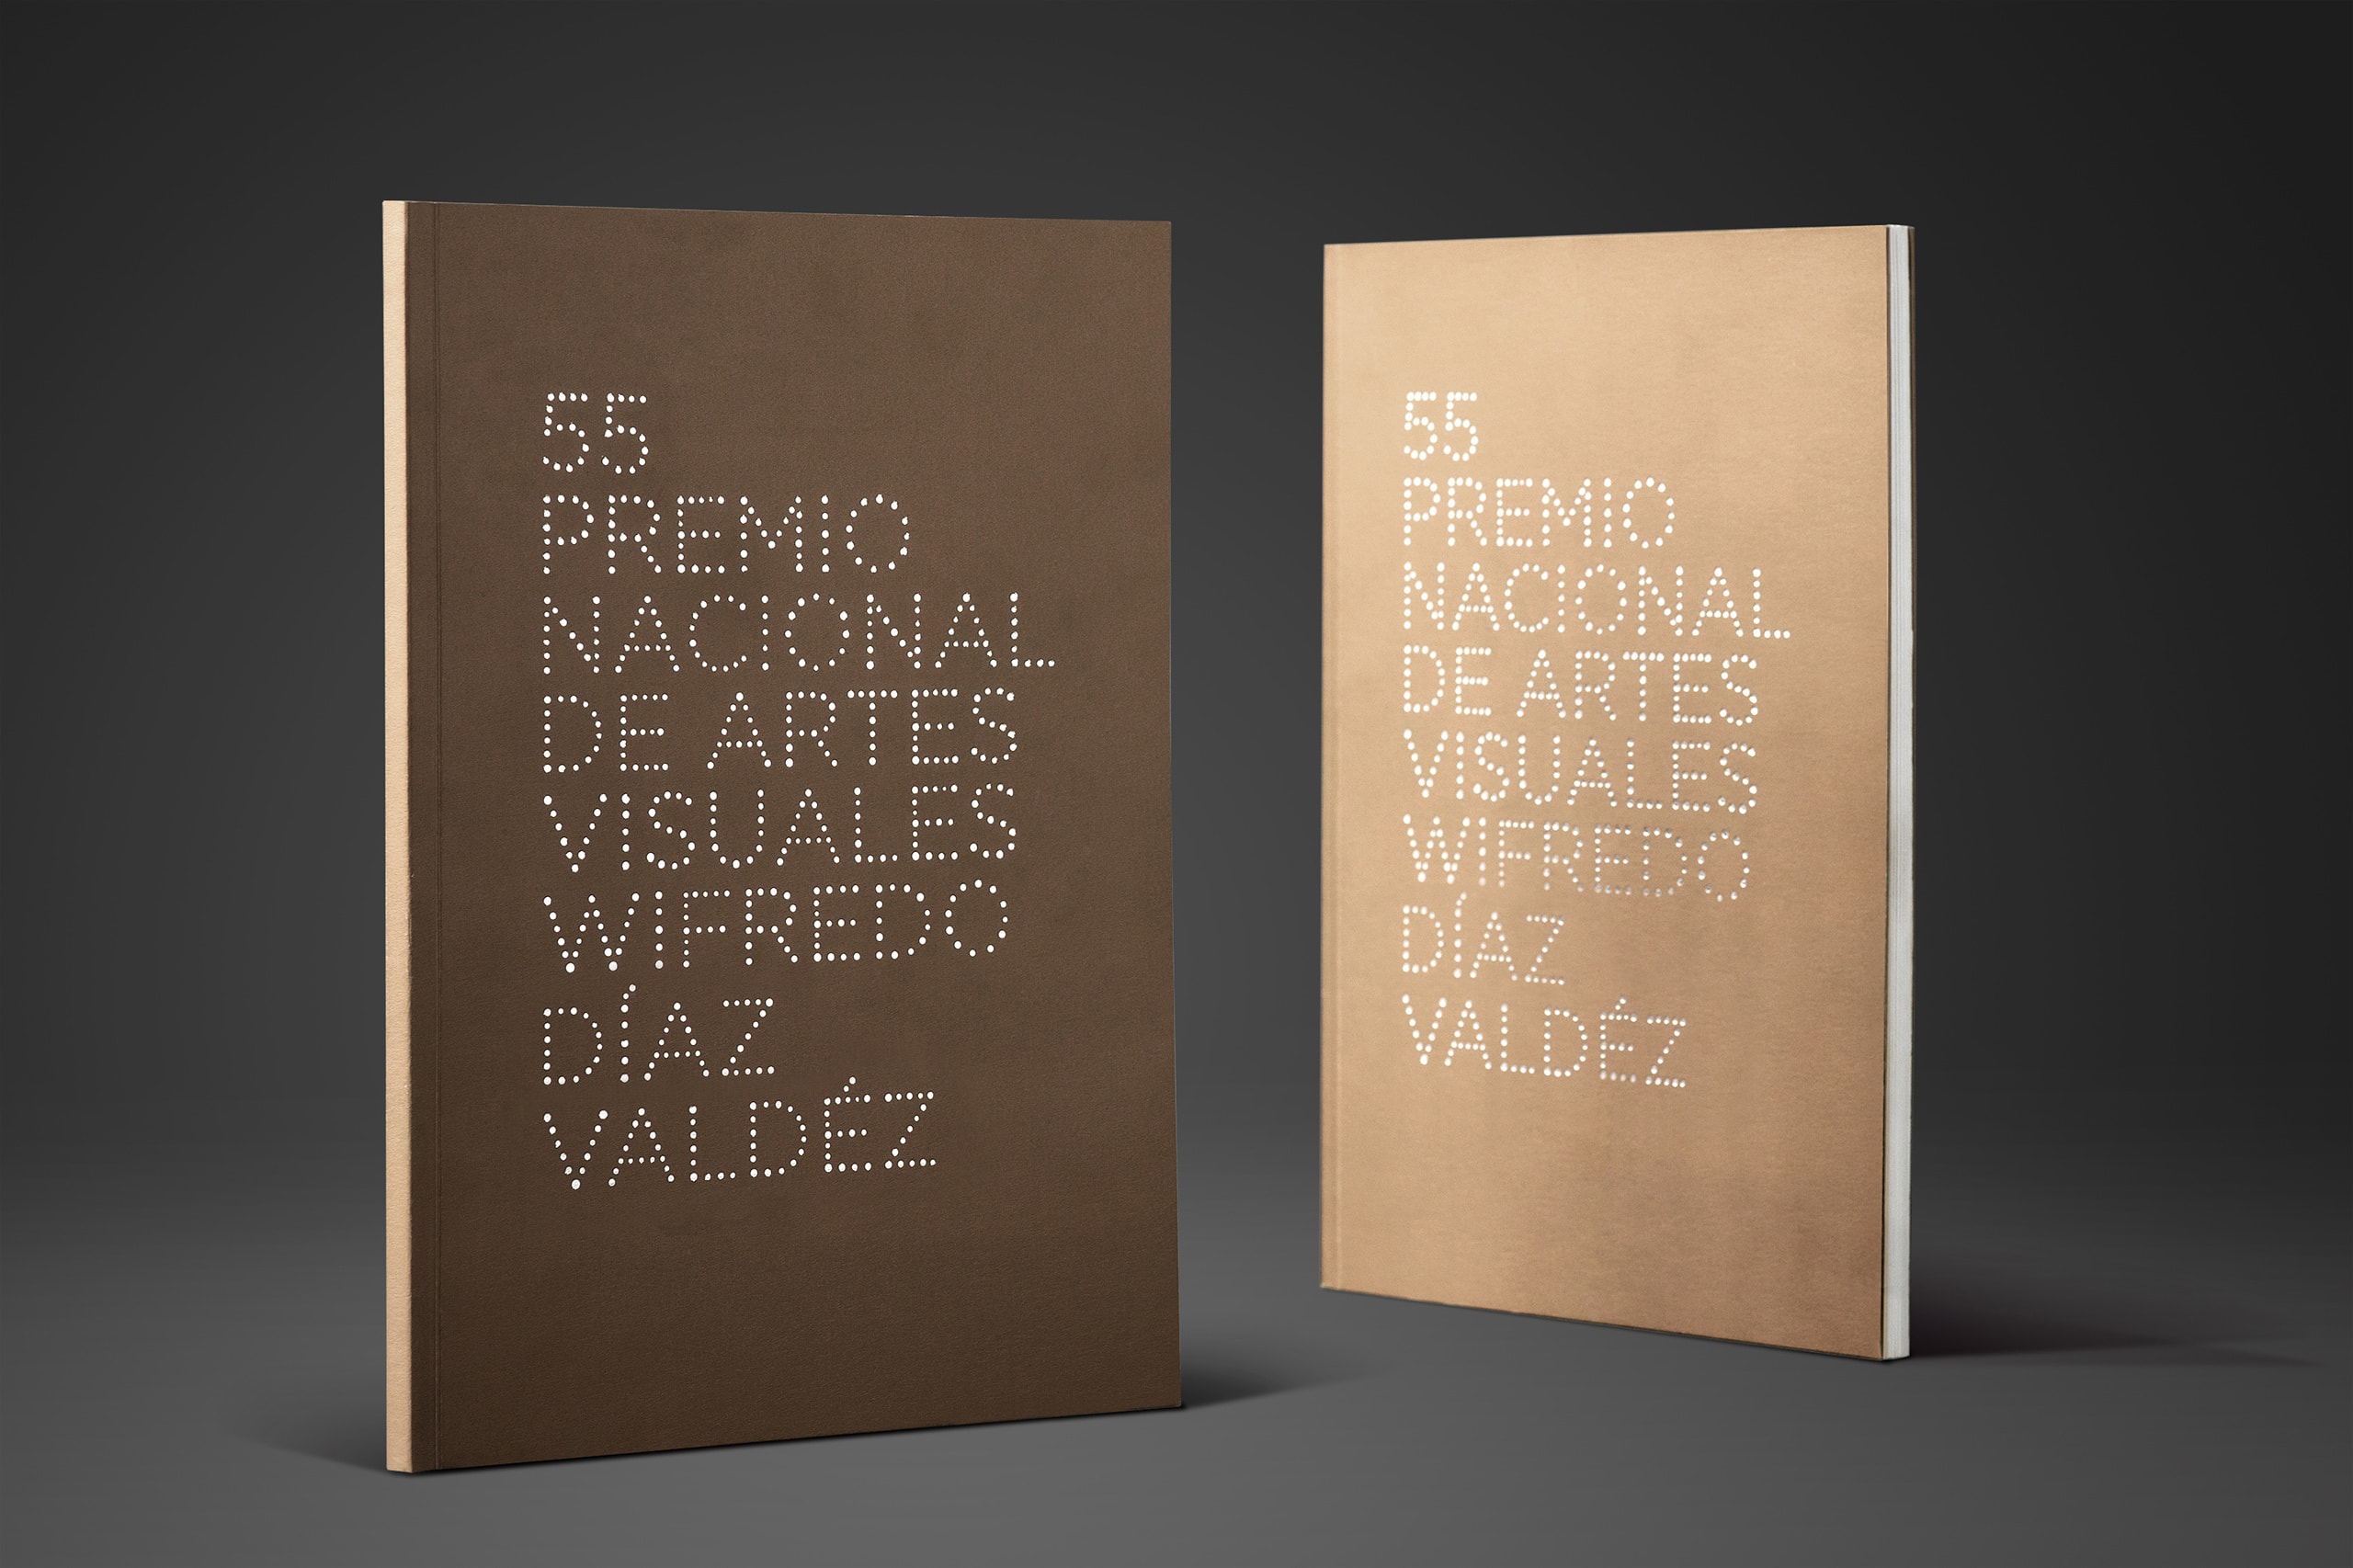 55 Premio Nacional de Artes Visuales